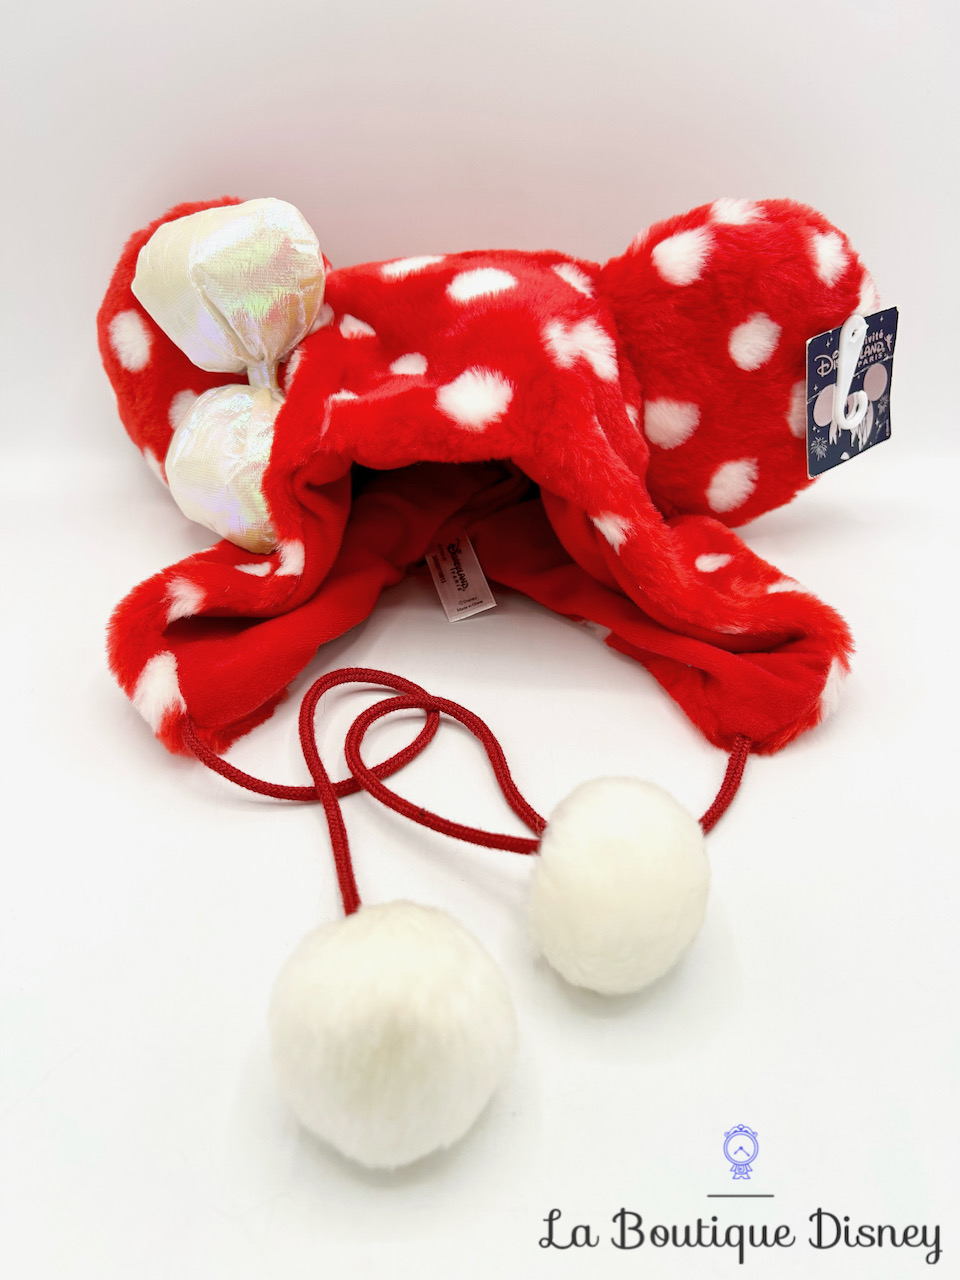 Bonnet Minnie Mouse Disneyland Paris Disney chapeau rouge pois blancs